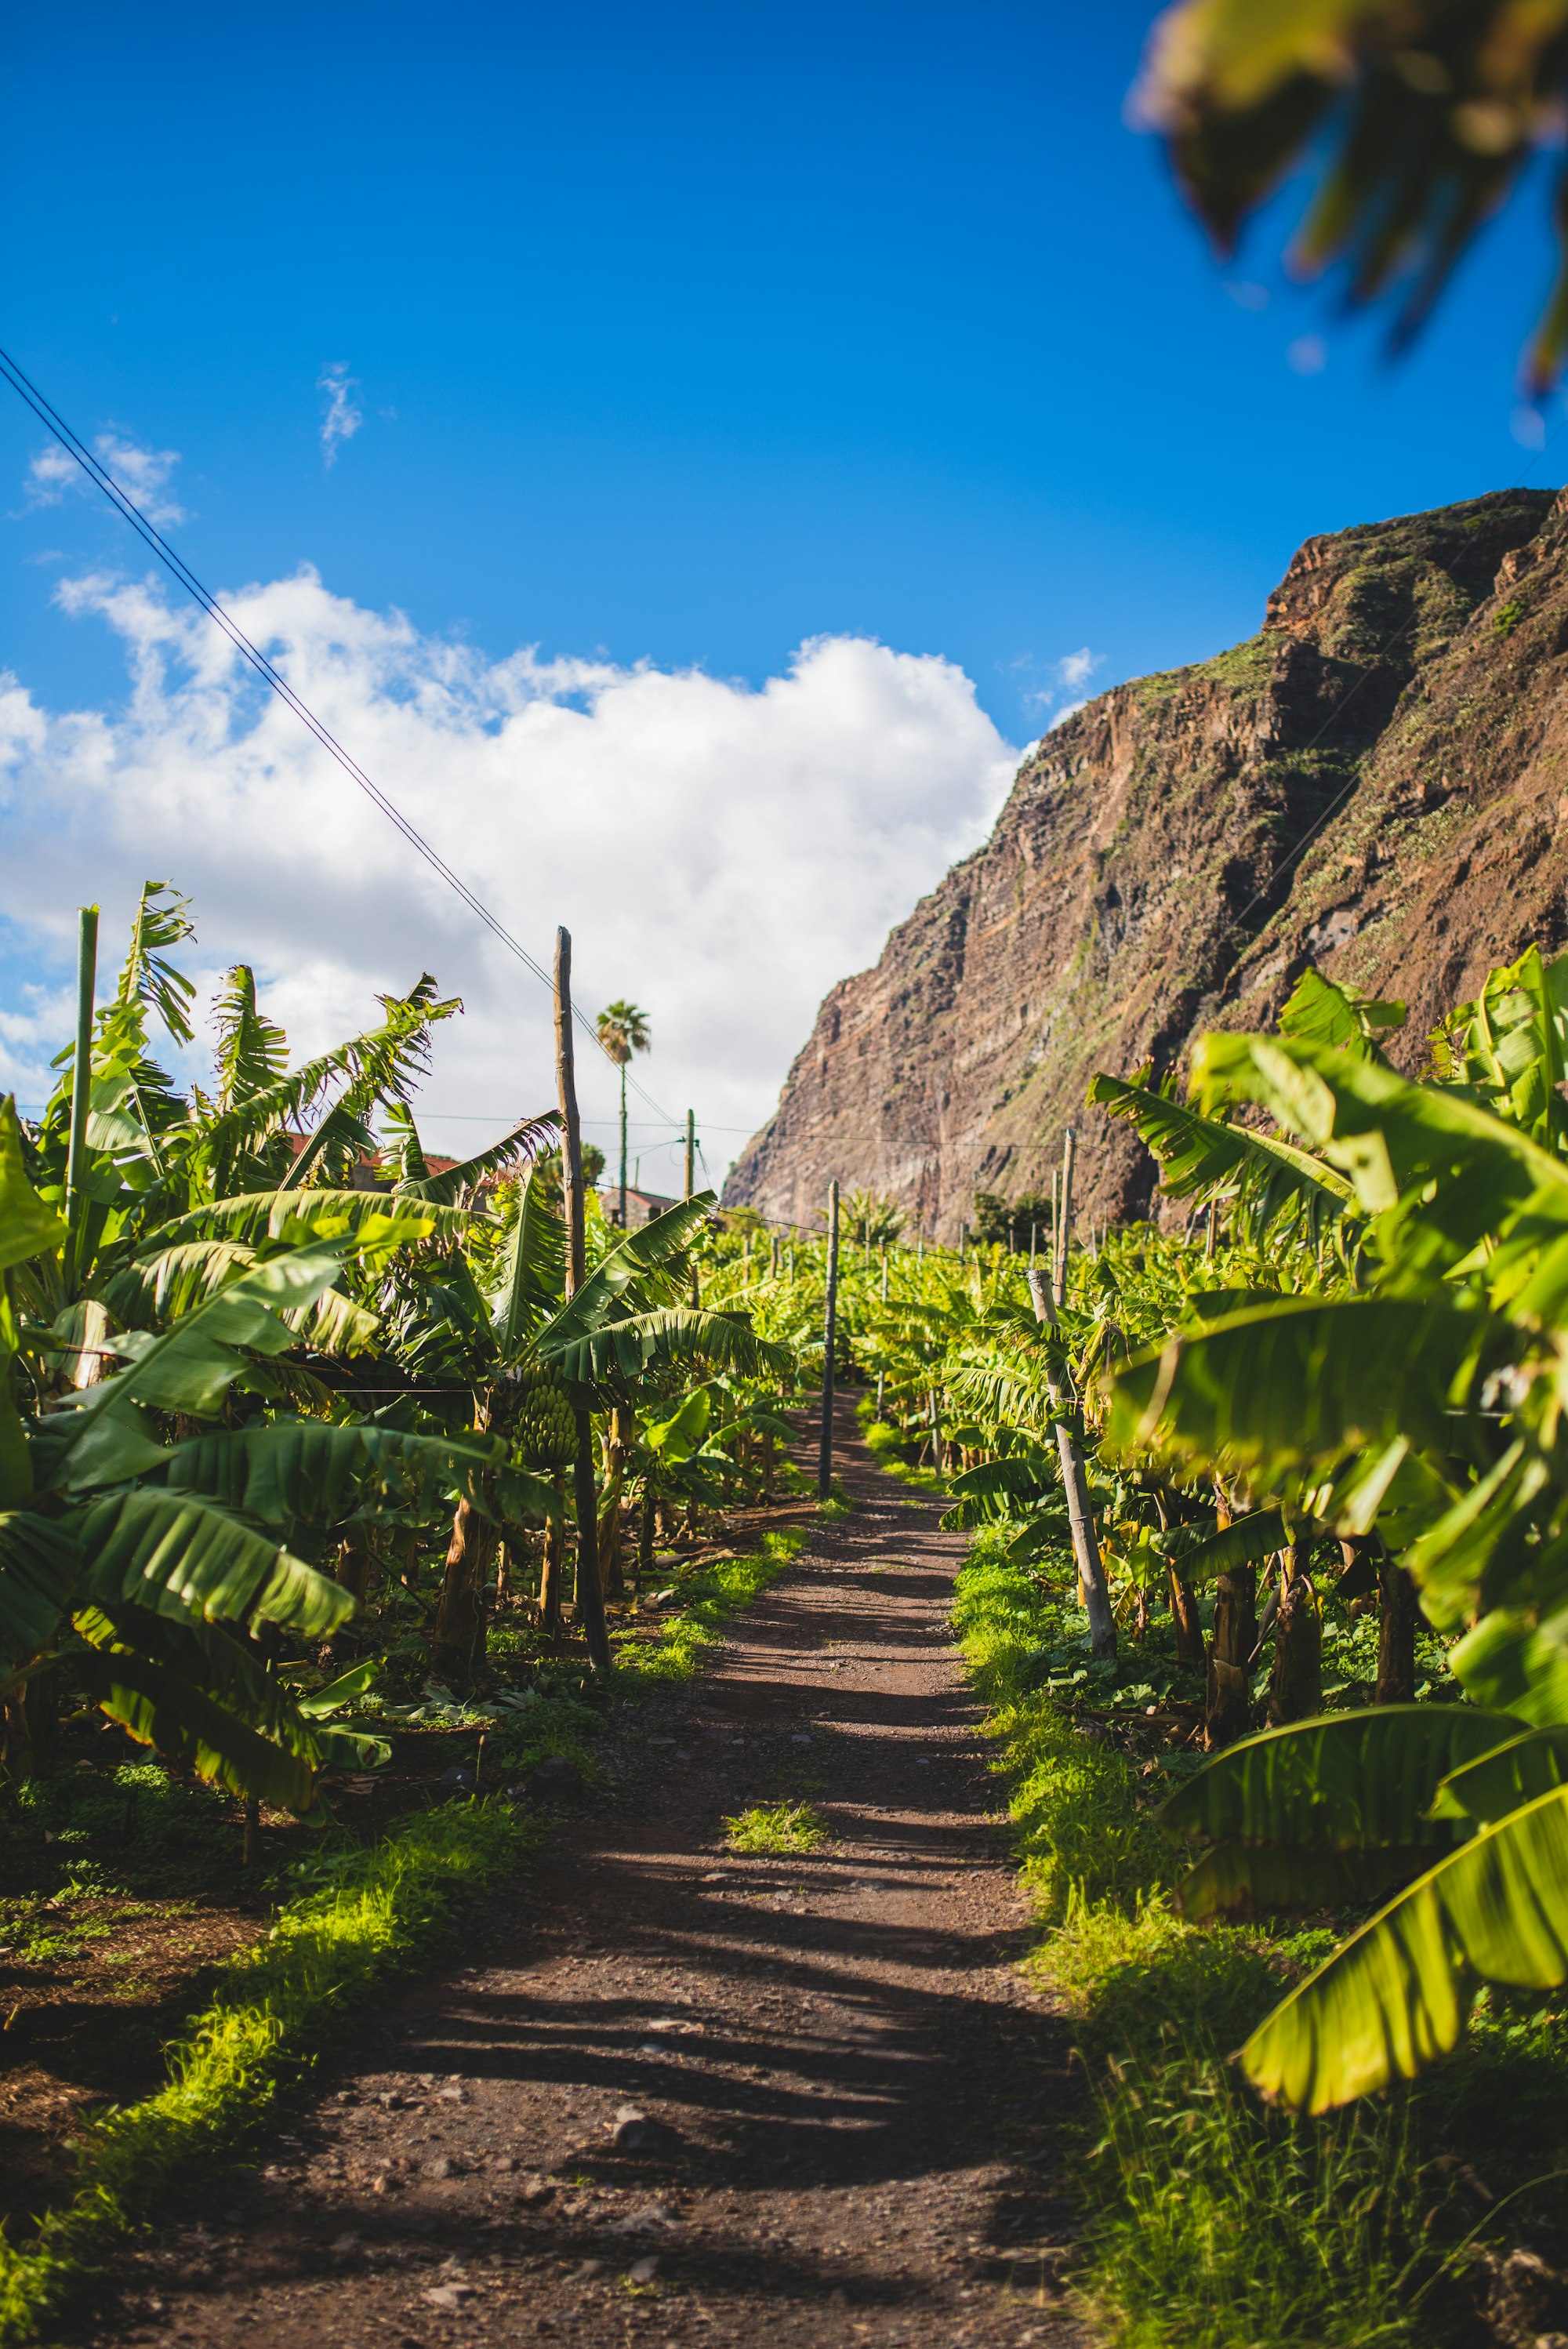 Banana trees in Madeira island